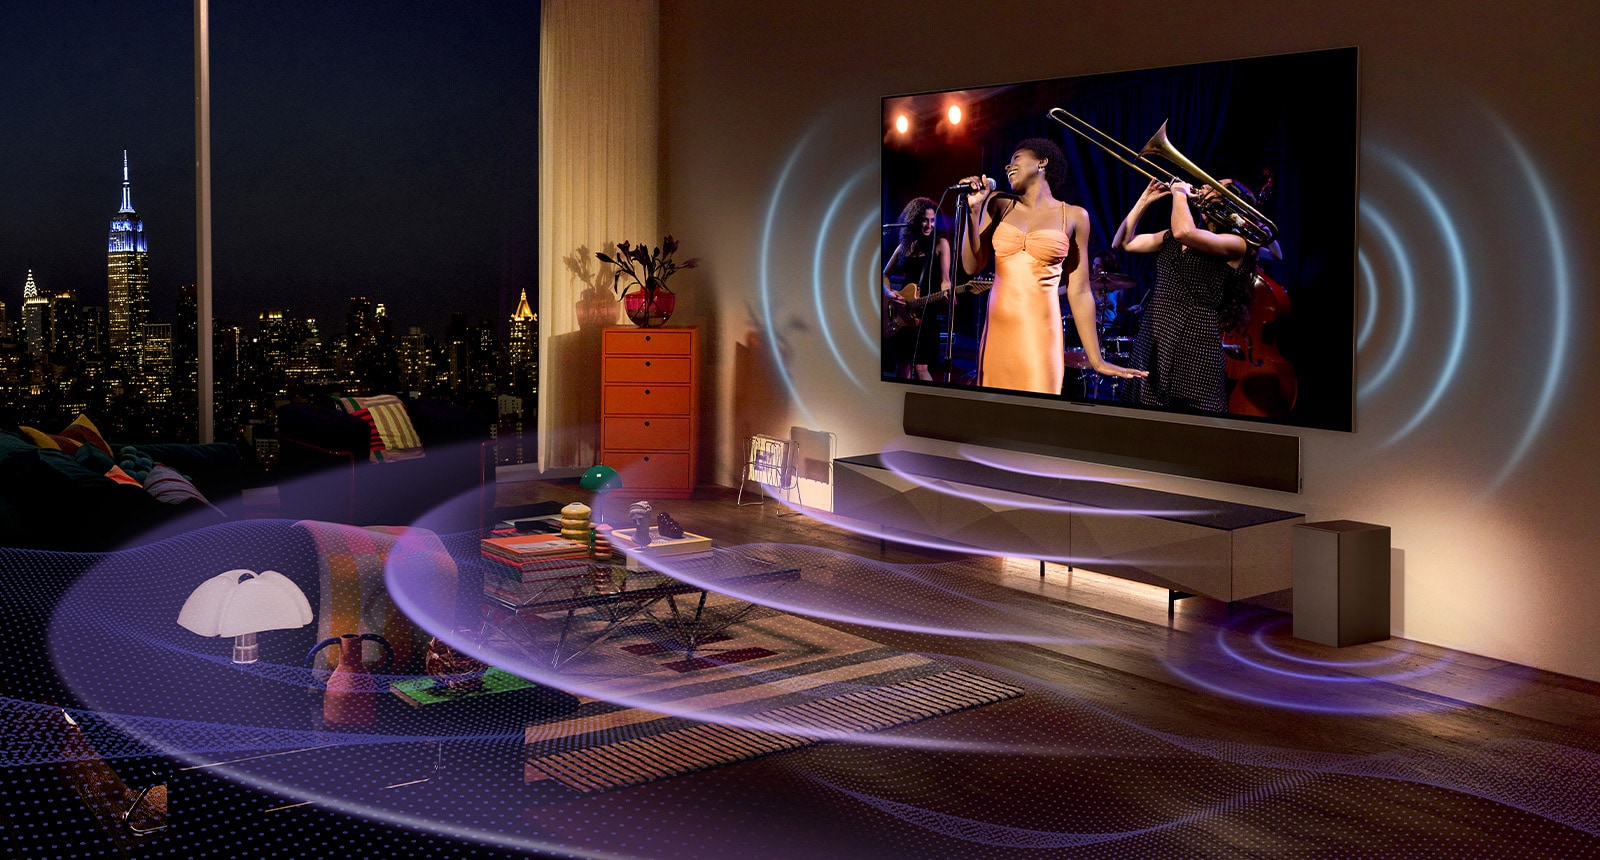 صورة لتلفزيون LG OLED في غرفة معروض على شاشته حفلة موسيقية. يمتلأ الحيز بخطوط محنية زرقاء تمثل صوت التلفزيون وخطوط محنية أرجوانية تعبر عن الصوت الصادر من مكبر الصوت.